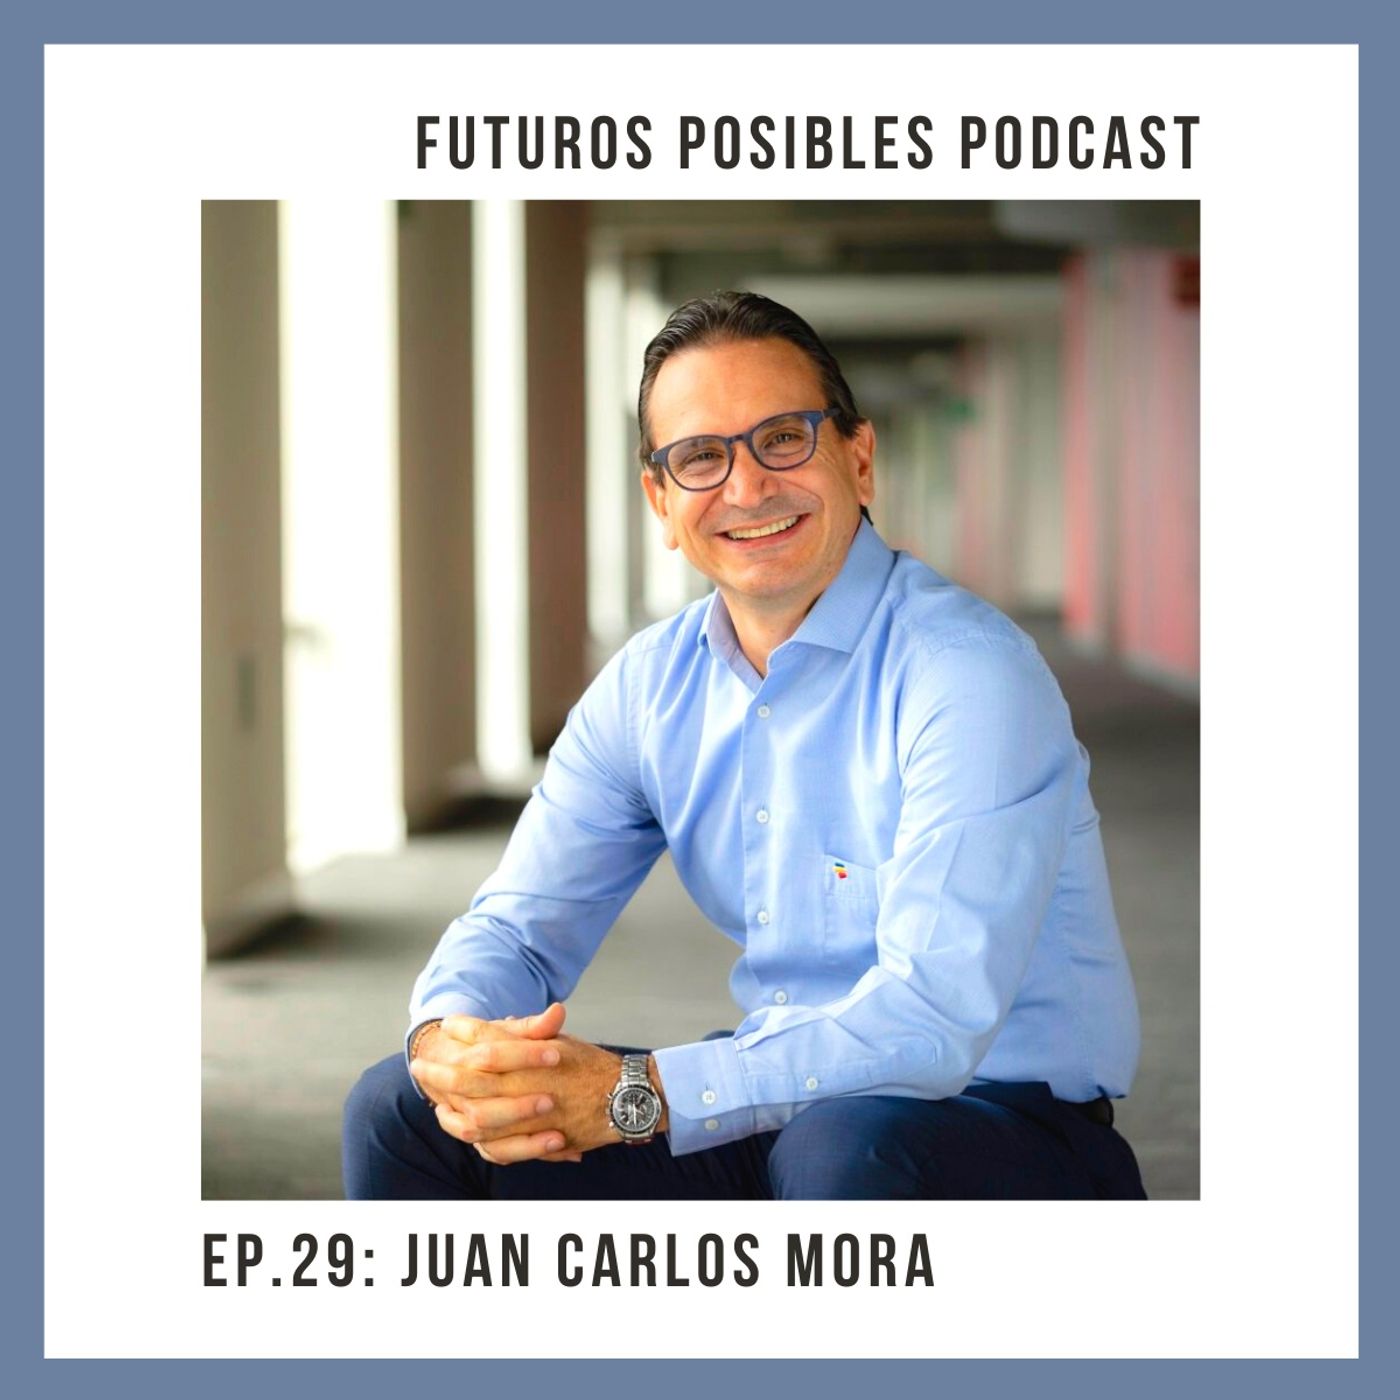 Ep. 29: Educación, innovación y desarrollo, con Juan Carlos Mora.